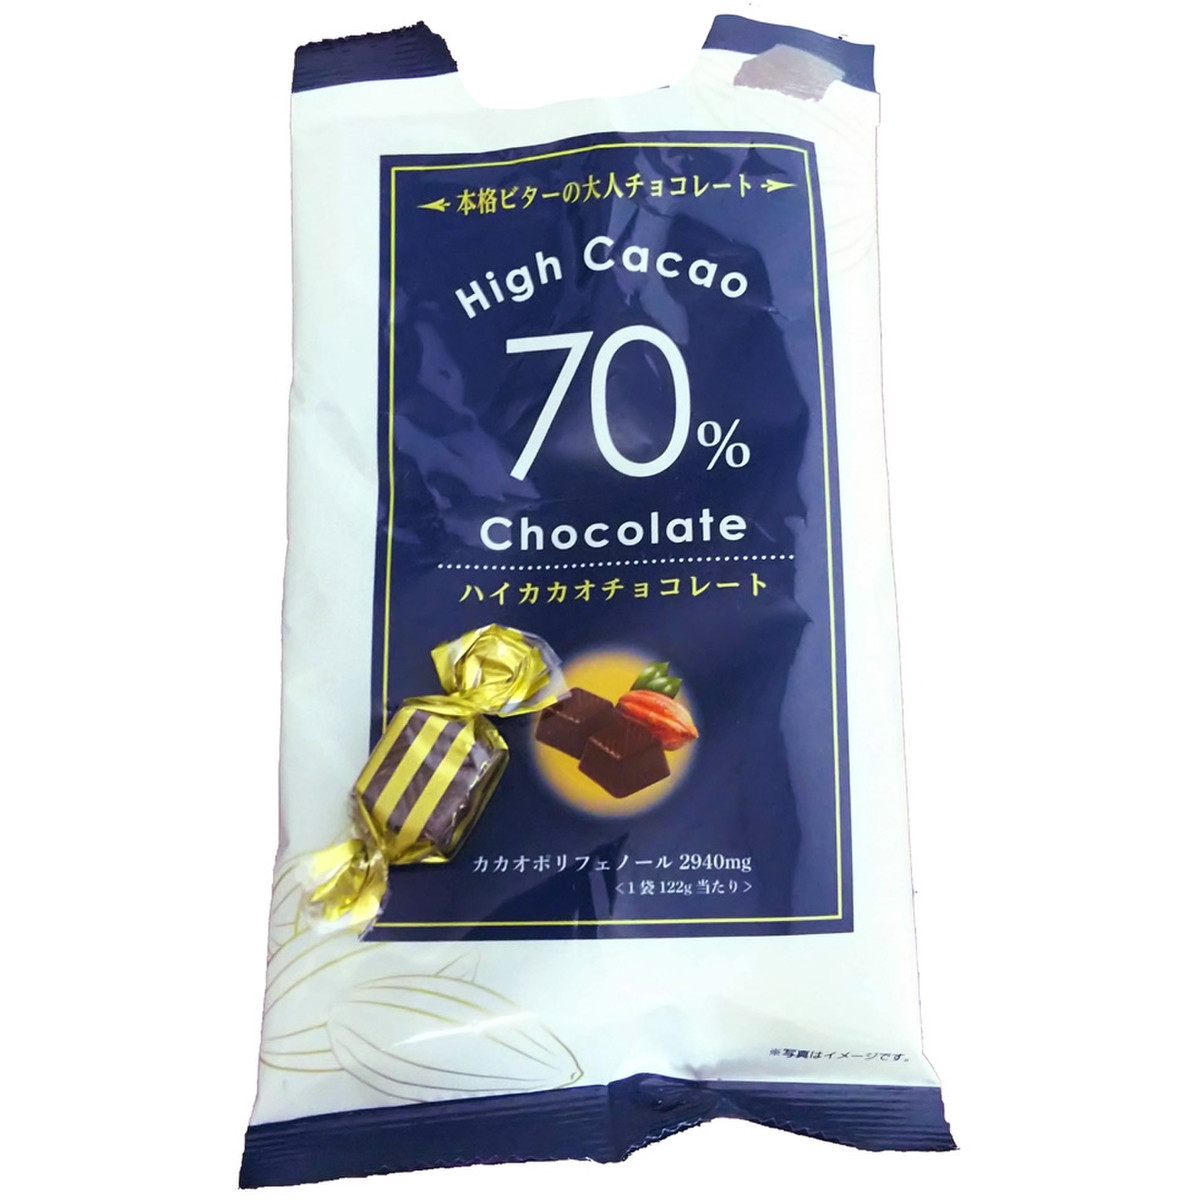 中評価 寺沢製菓 ハイカカオ70 チョコレート 122gの口コミ 評価